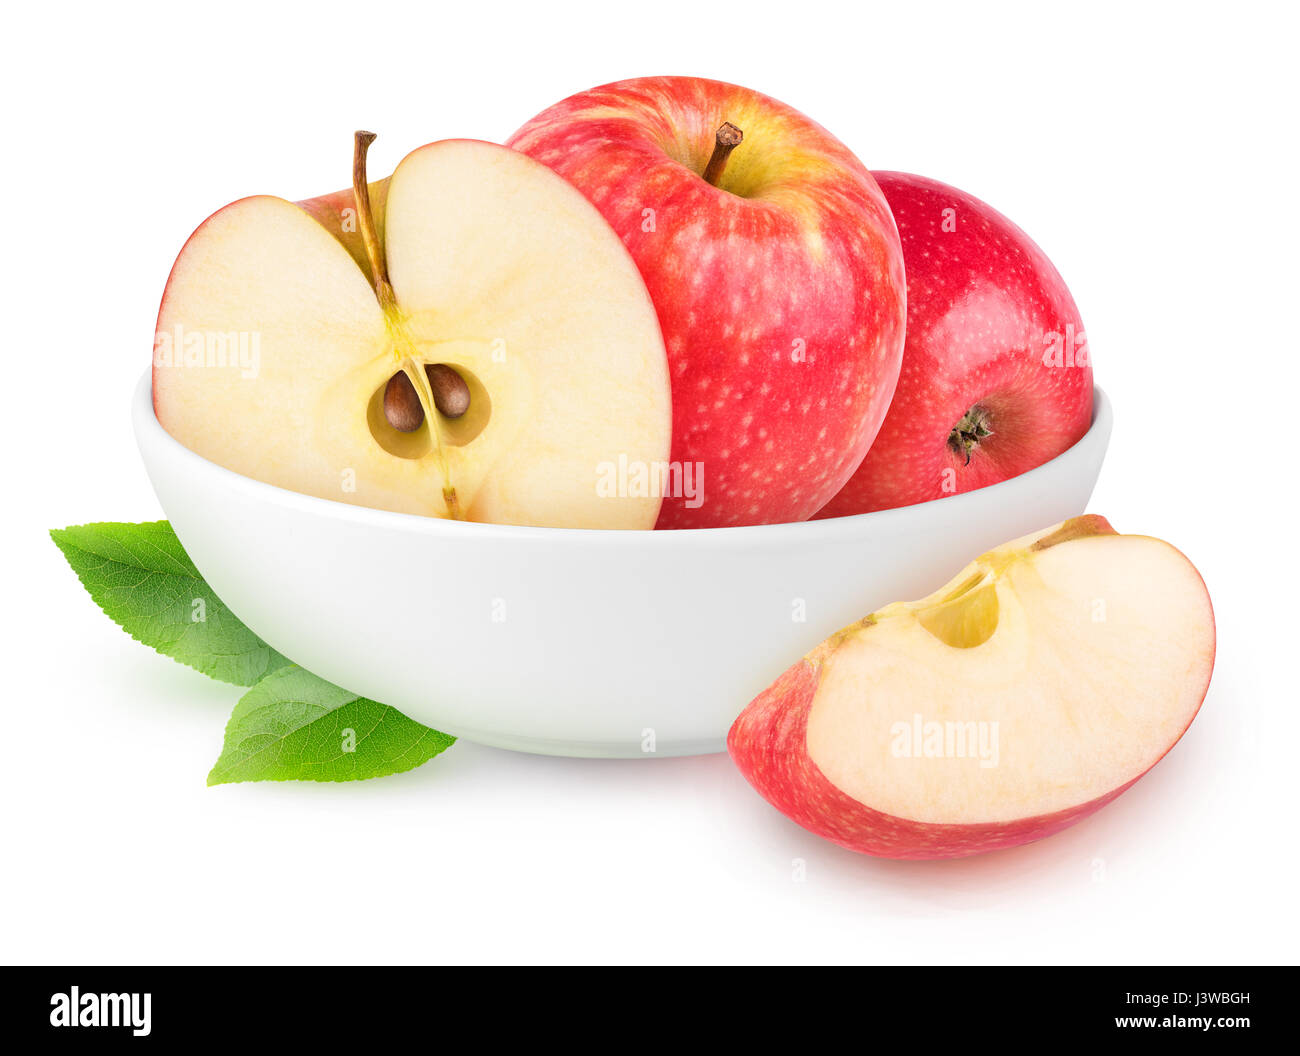 Isolierte Äpfel. Weiße Schale mit geschnittenen Apfel Obst isoliert auf weißem Hintergrund mit Beschneidungspfad Stockfoto